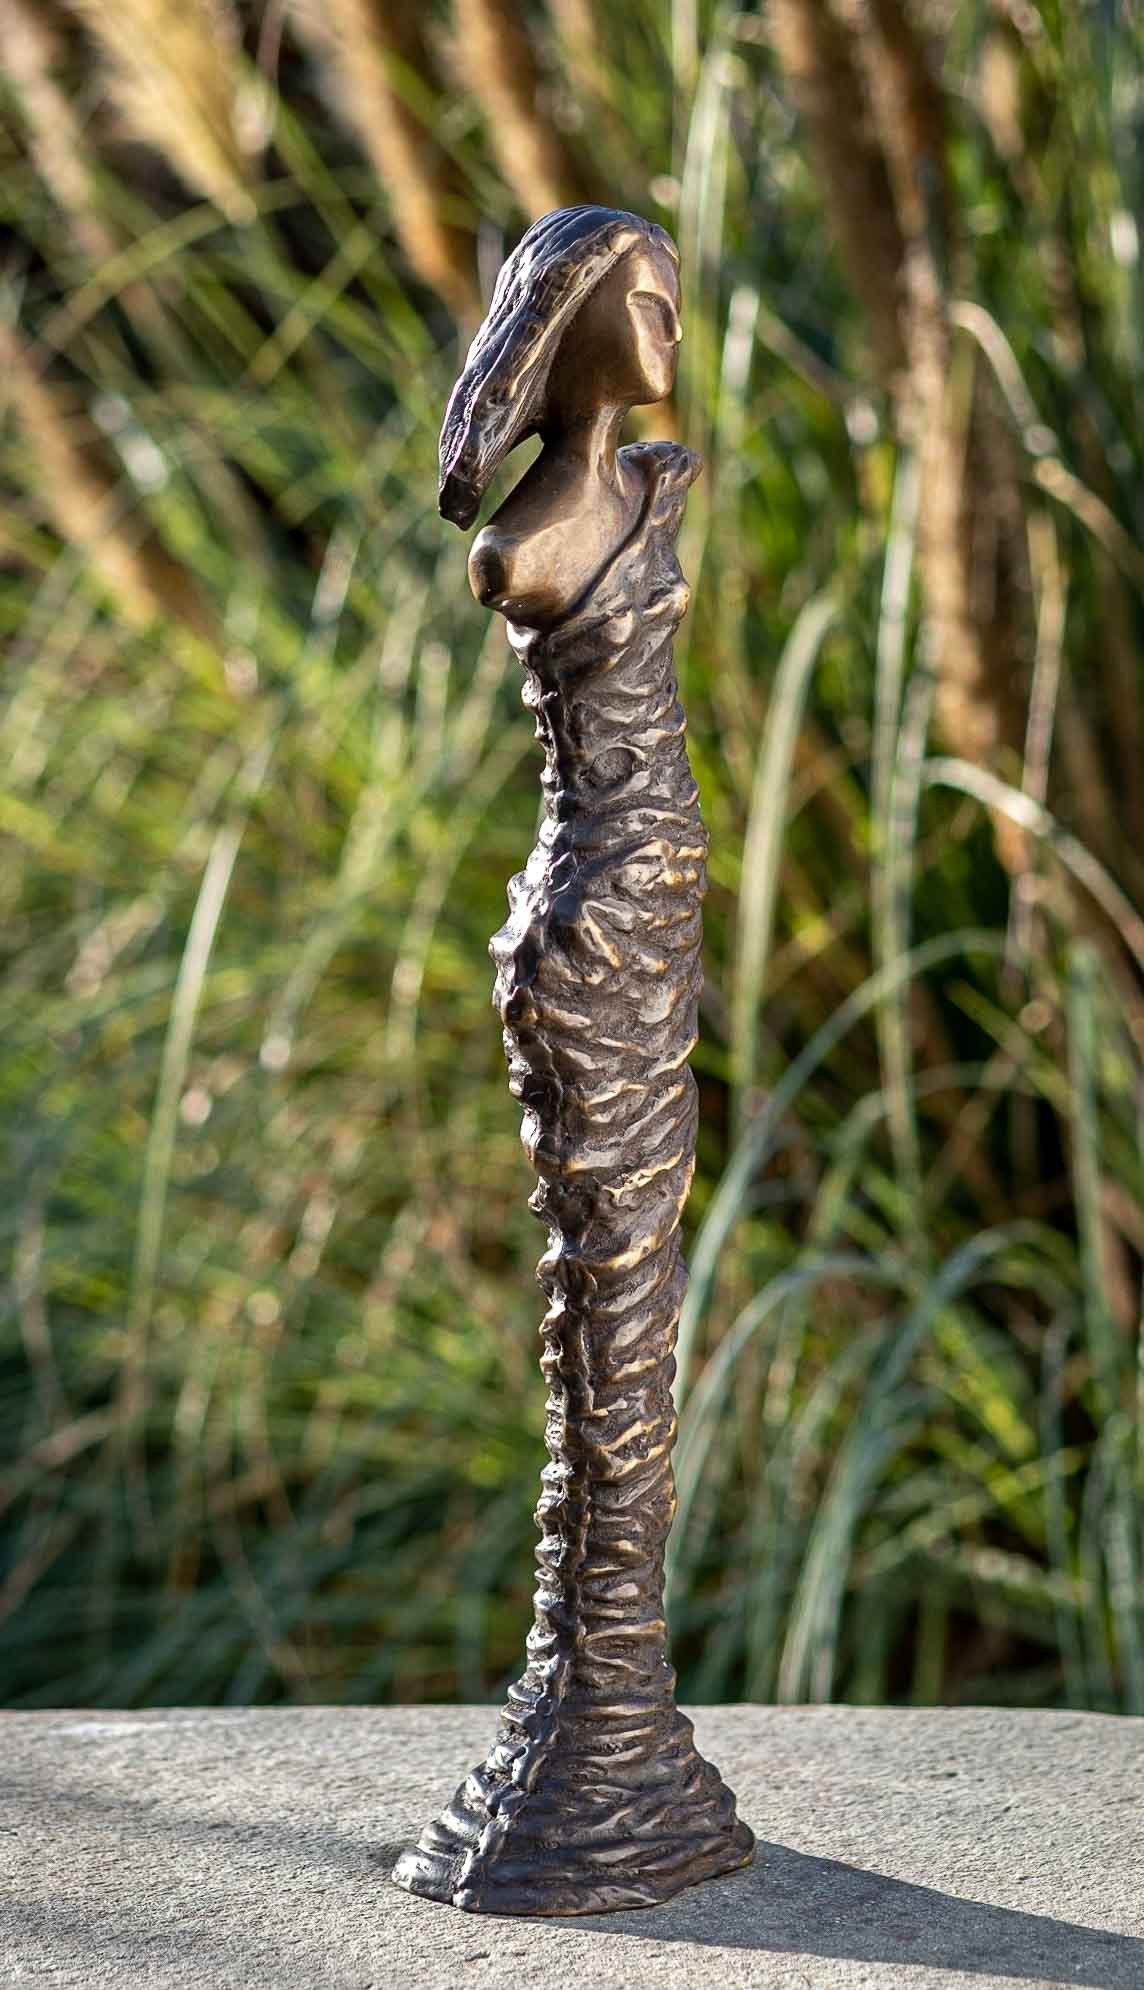 IDYL Gartenfigur IDYL Bronze-Skulptur gegen Moderne und – robust von werden Modelle Bronze sehr Langlebig Frost, in in gegossen – Frau, UV-Strahlung. patiniert. – und Wachsausschmelzverfahren Regen Bronze witterungsbeständig Hand Die